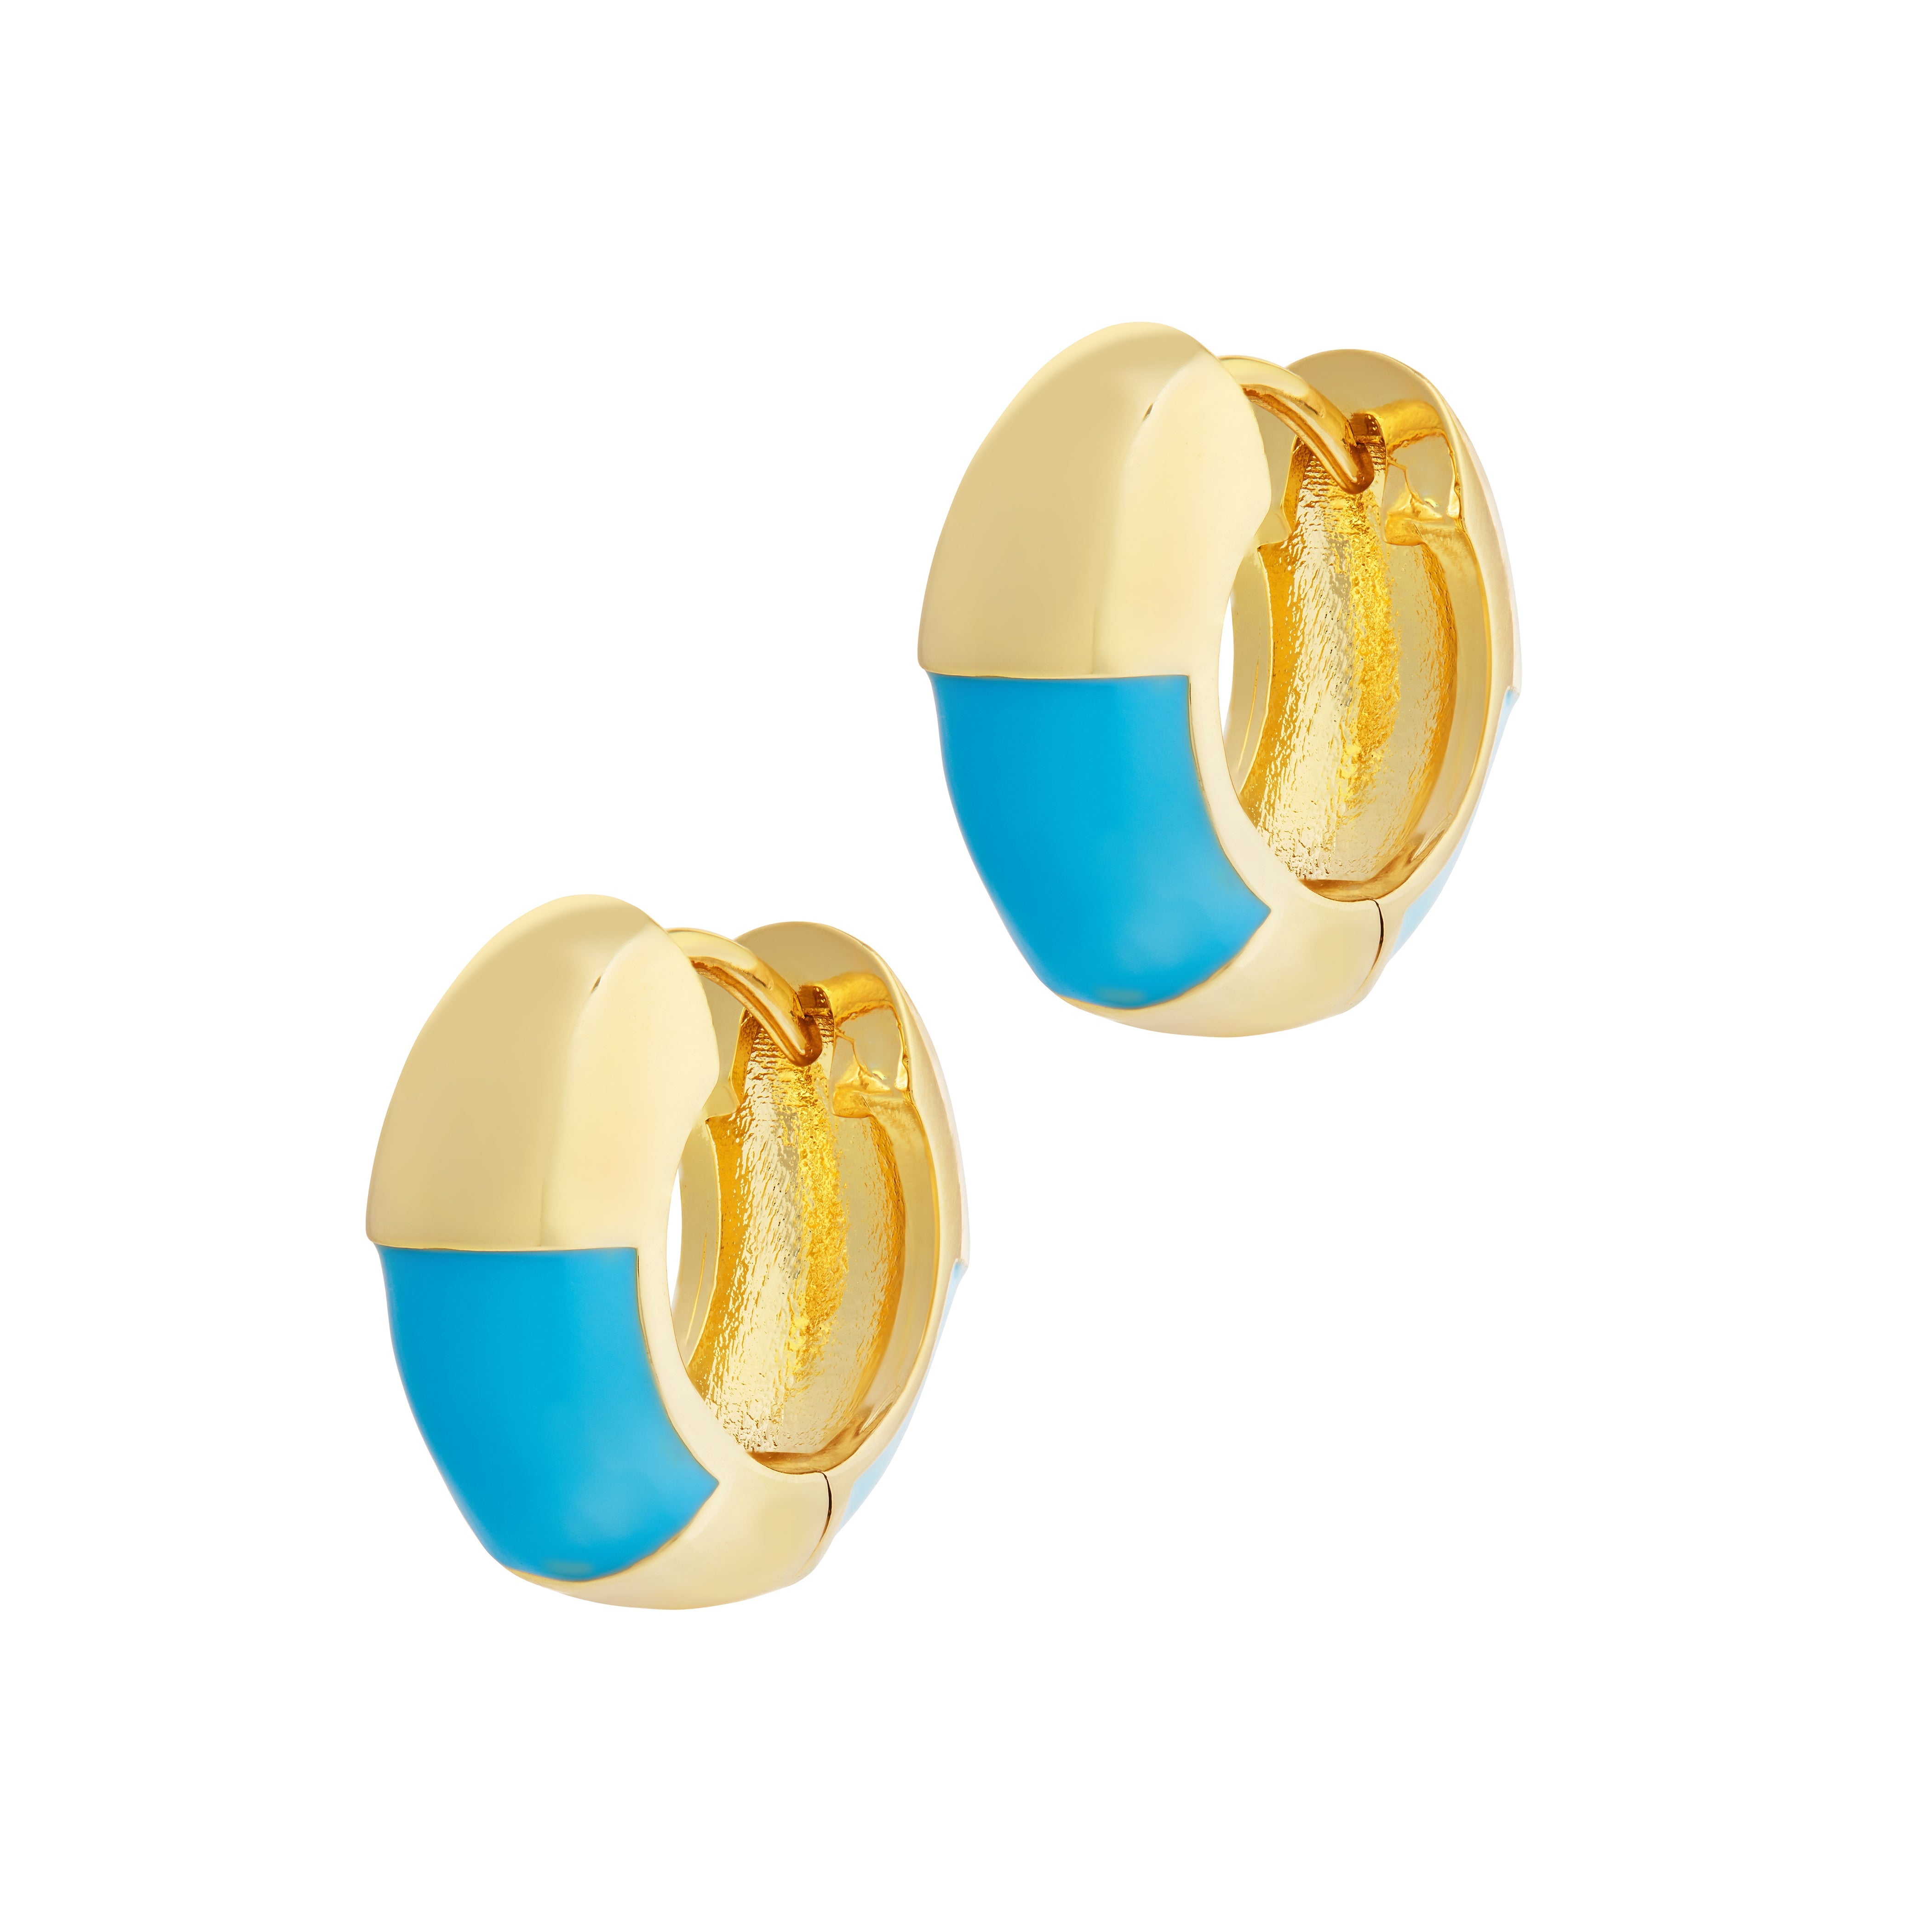 Cote d'Azur Earrings